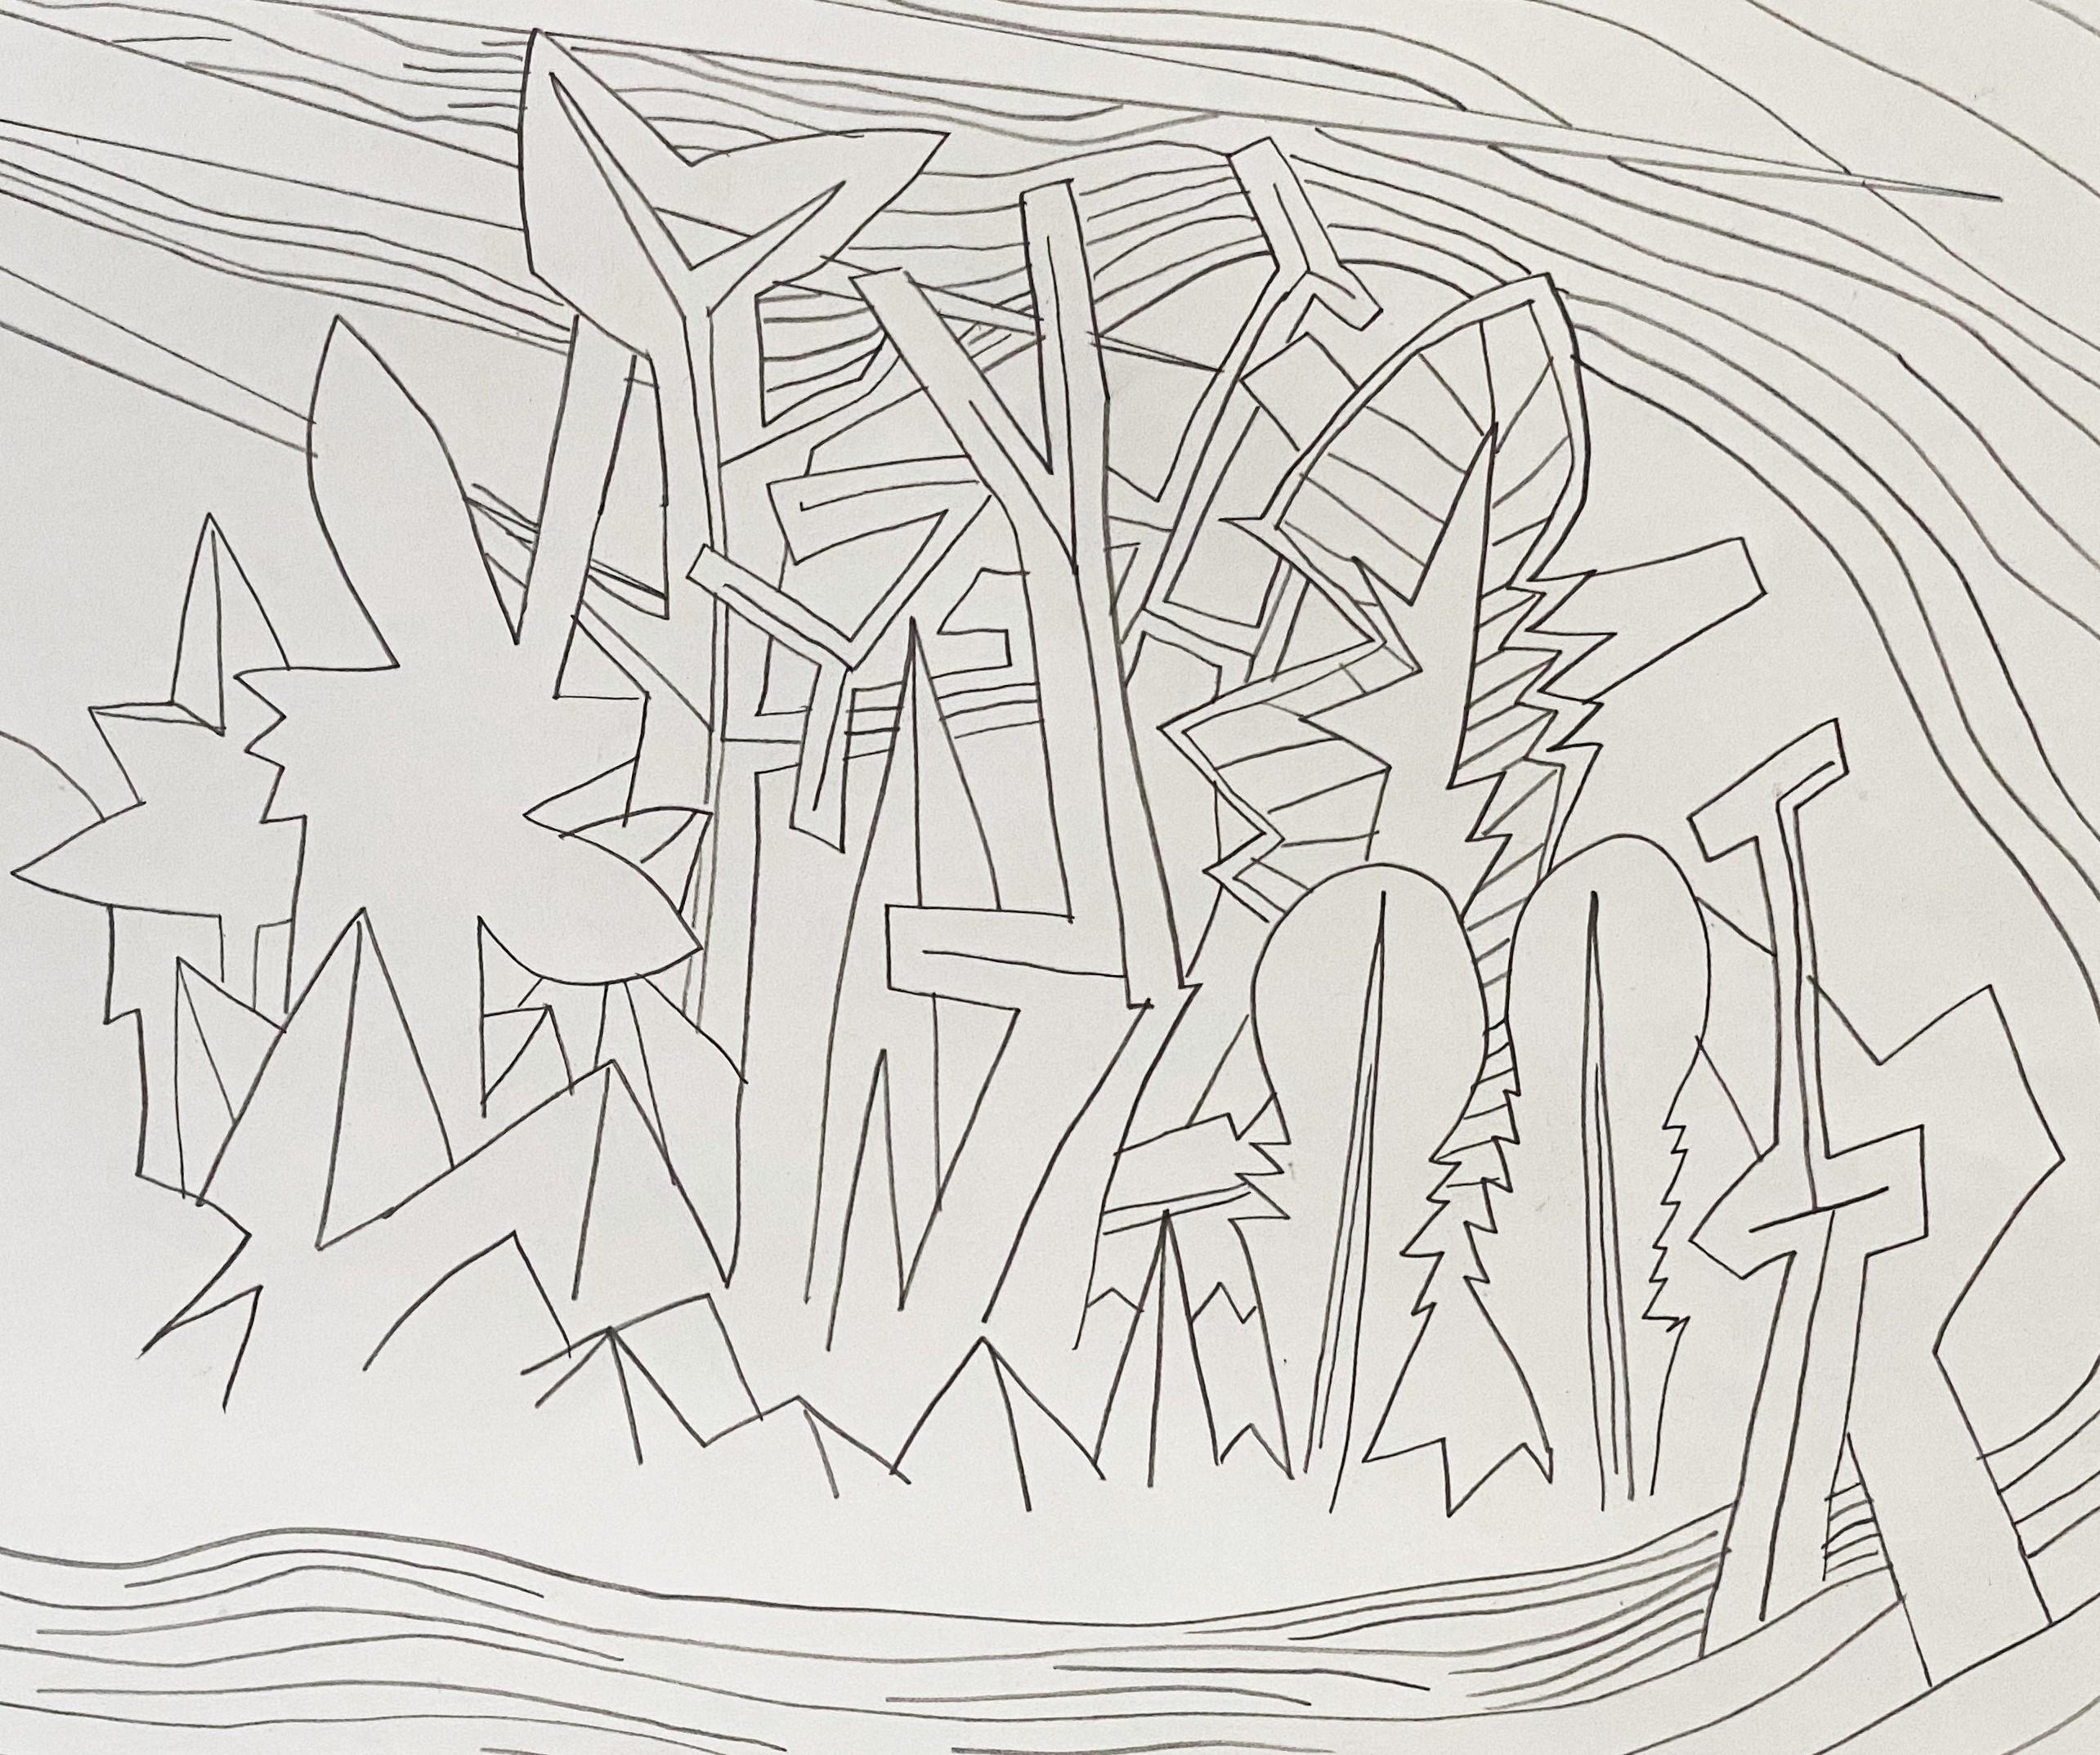 Insel für Umberto 03, 2014
Bleistift auf Papier (signiert und datiert in der rechten unteren Ecke, gerahmt)
11.6 H x 16,5 W in.
29.5 H x 42 B cm

die 